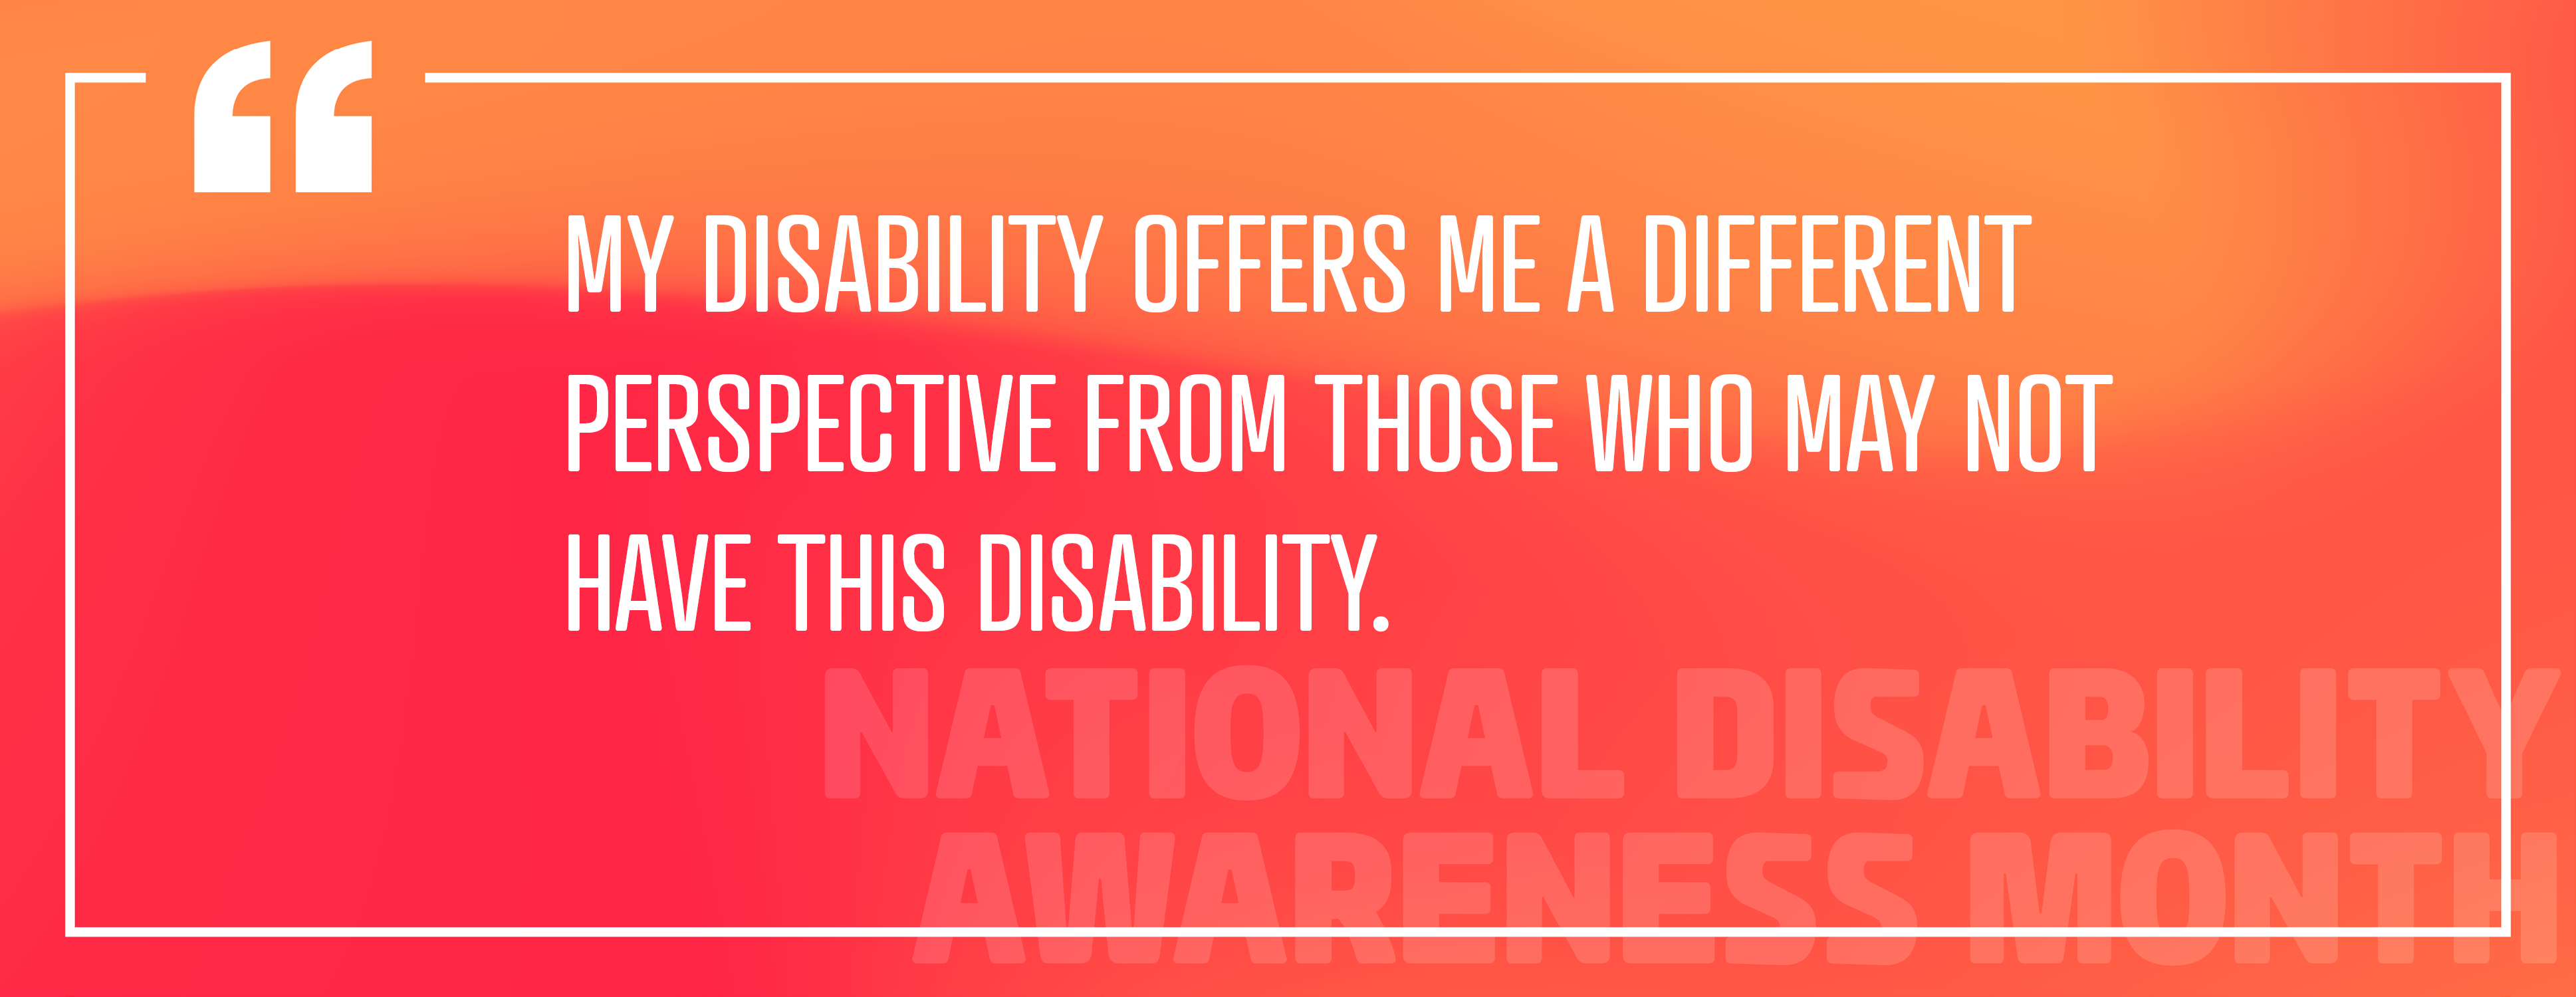 الصورة 2: "إعاقتي تقدم لي وجهة نظر مختلفة عن أولئك الذين قد لا يعانون من هذه الإعاقة."